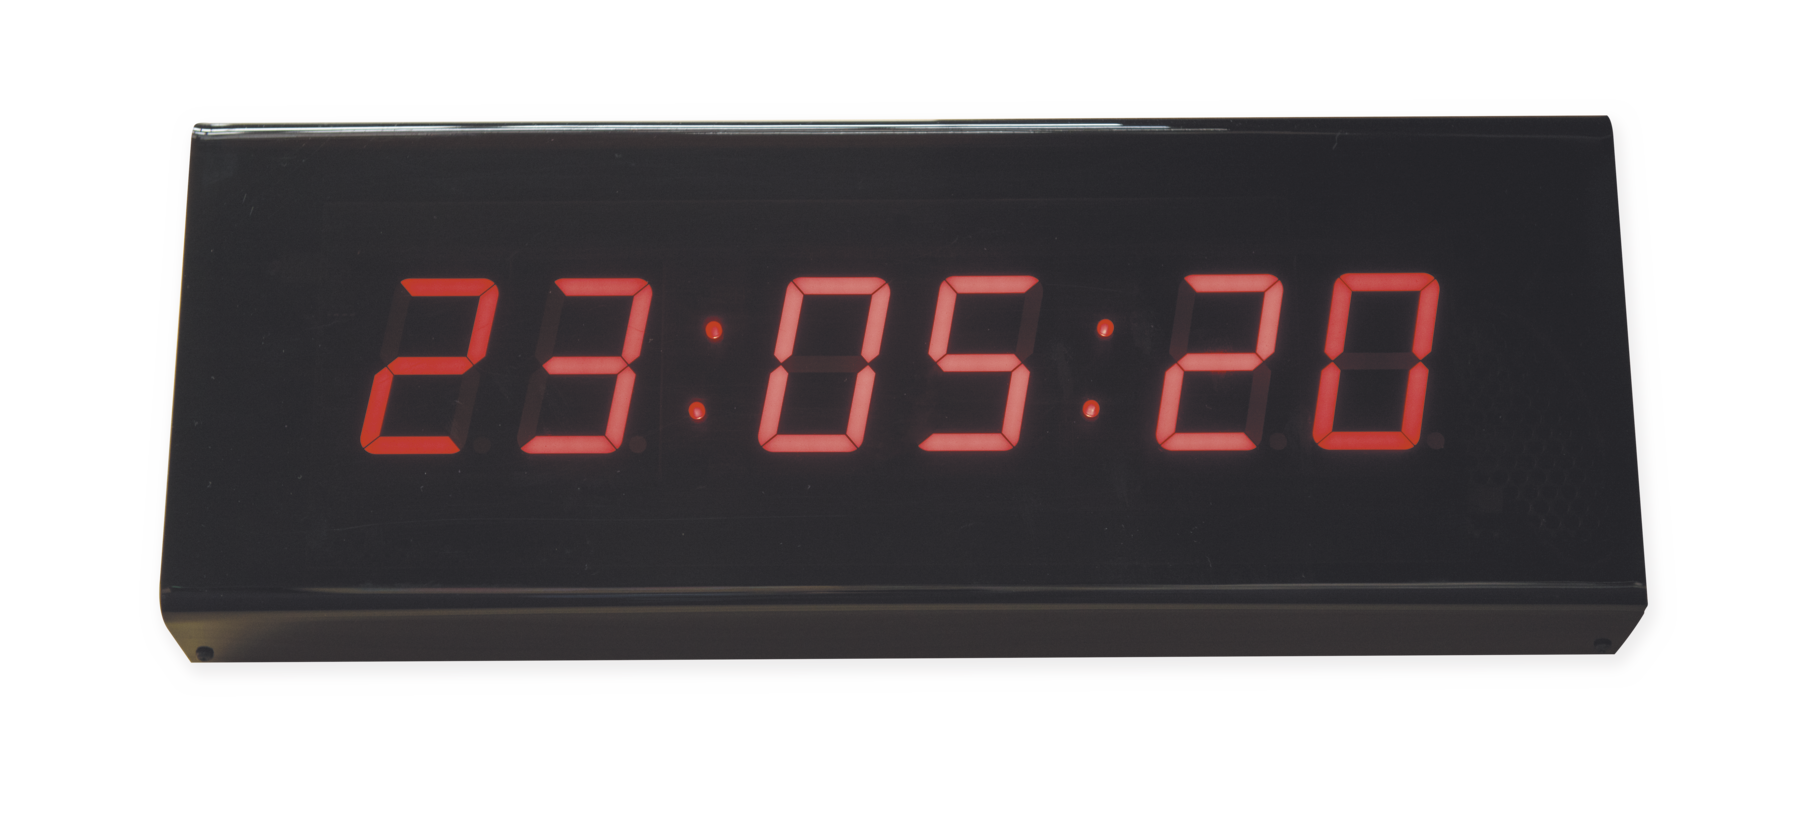 IFotografia. Relógio digital preto marcando 23:05:20 em vermelho.